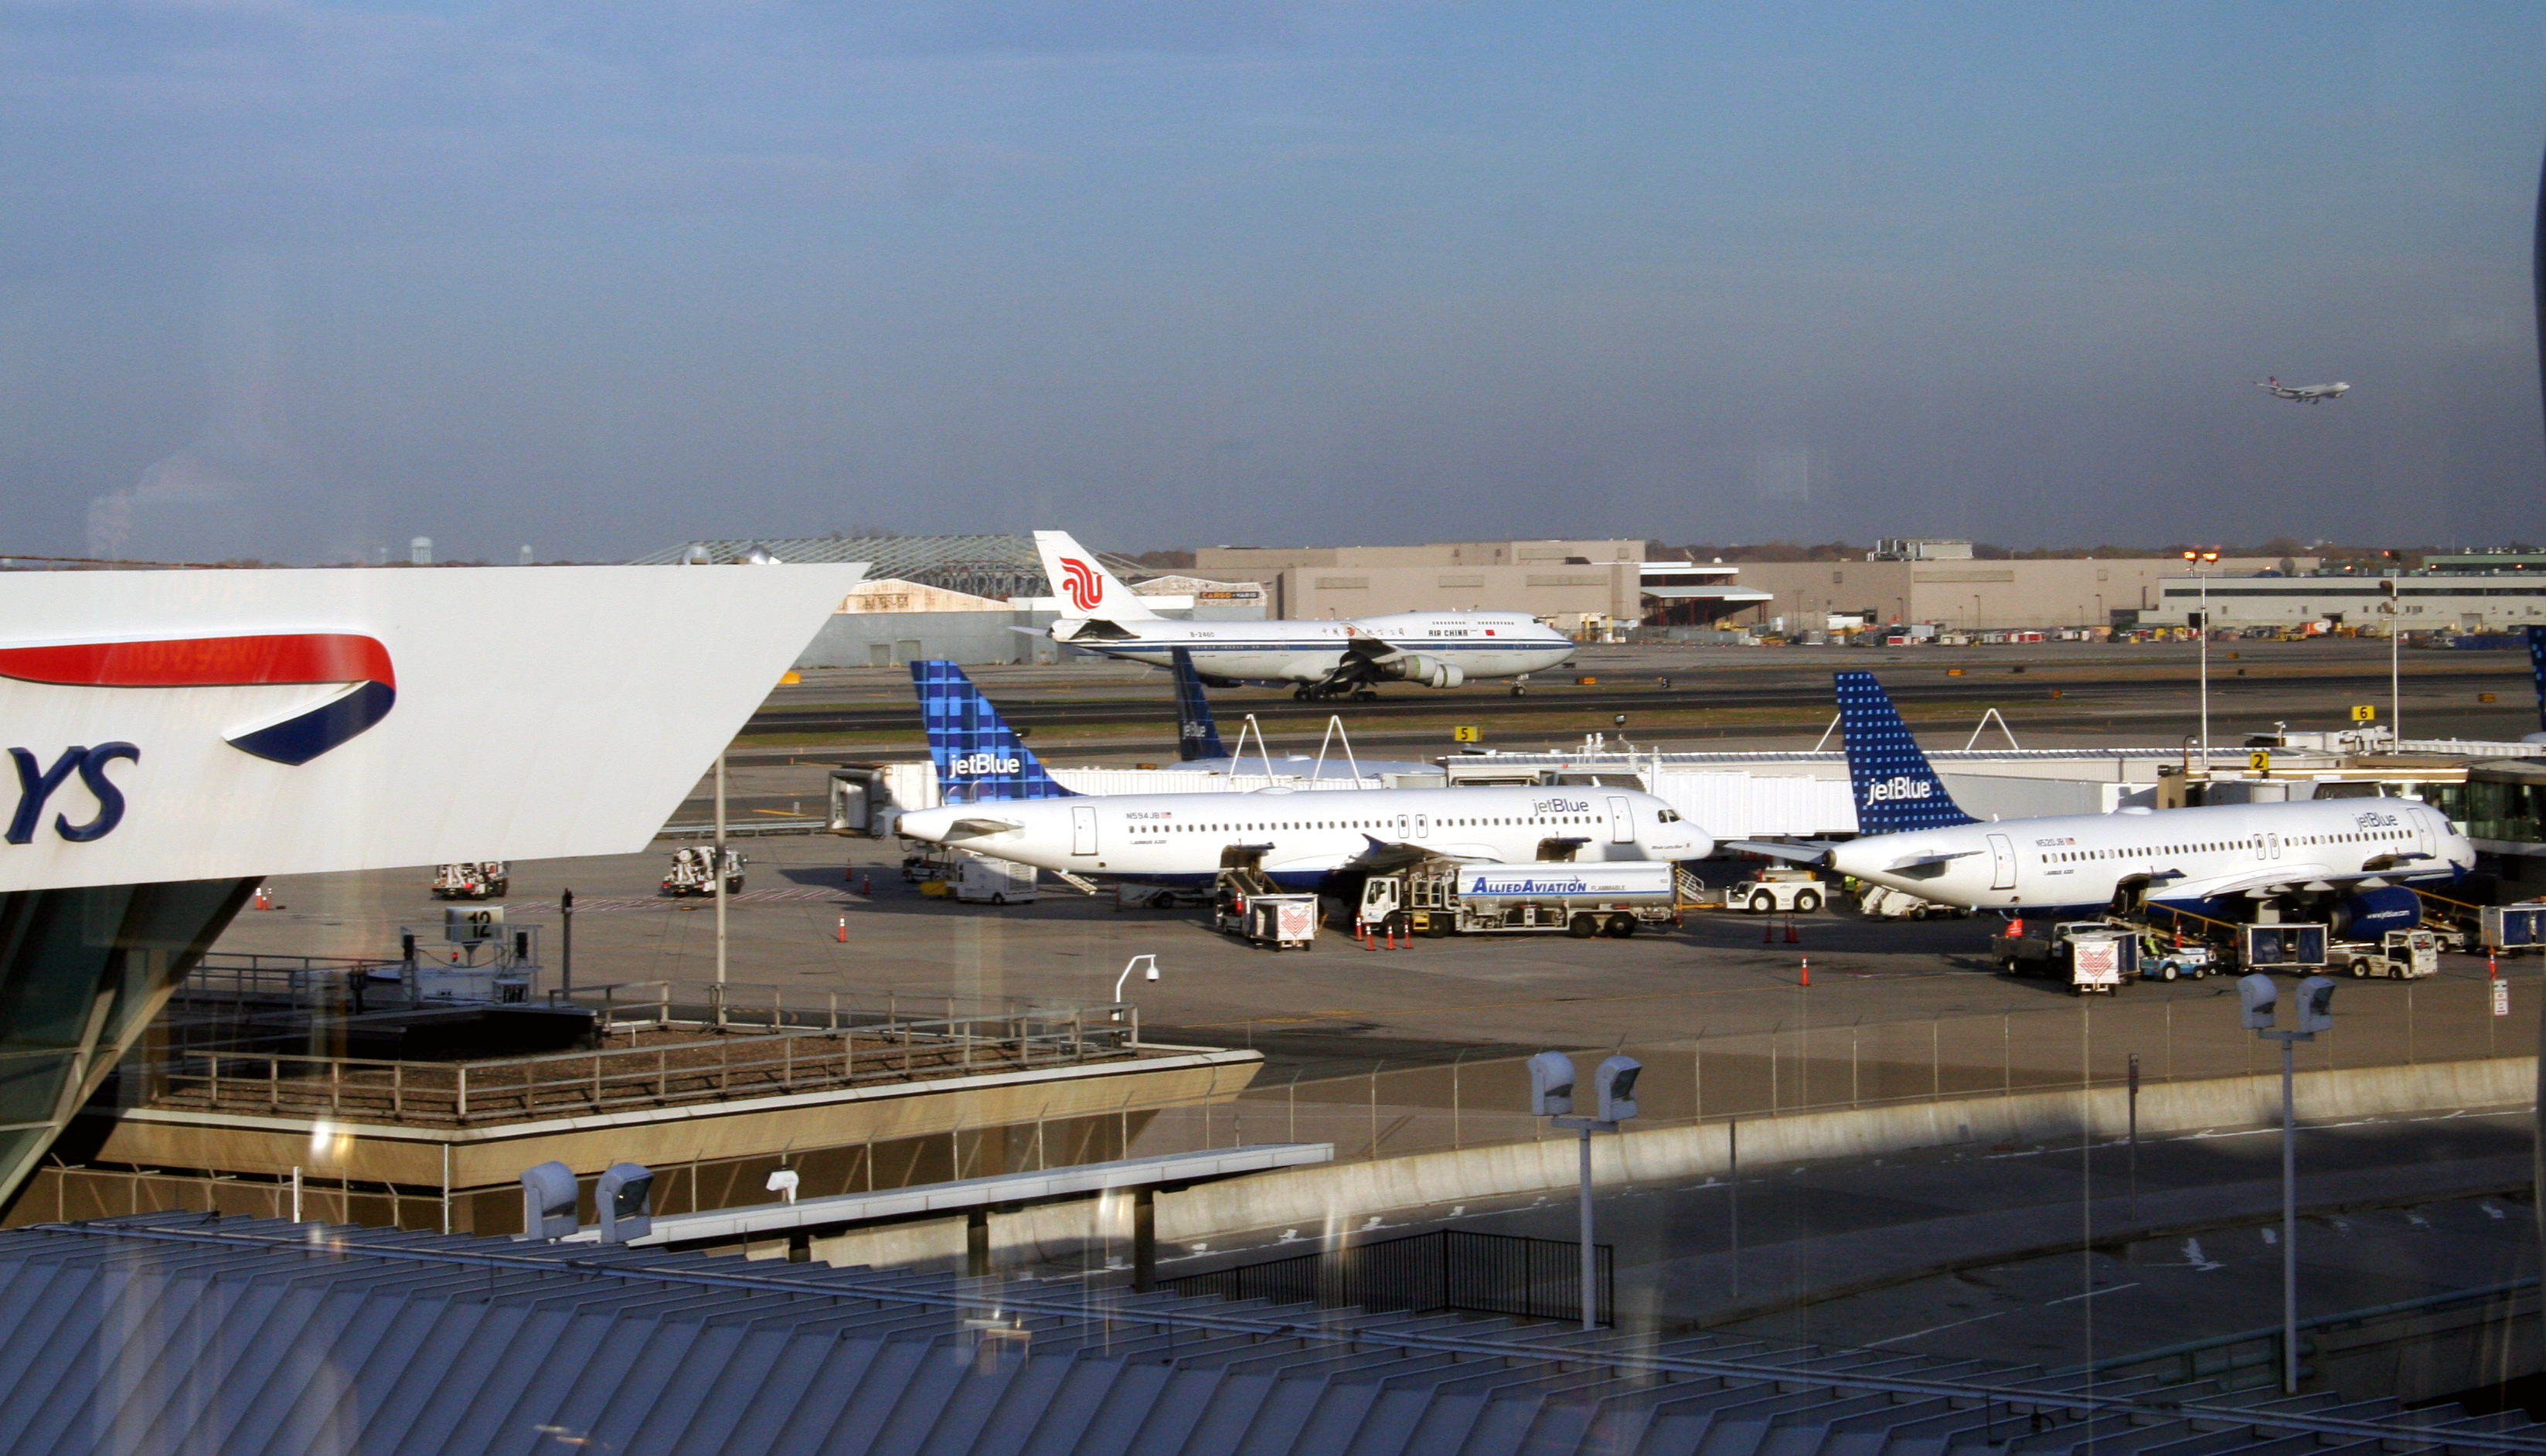 New York's JFK airport to receive $10 billion revamp